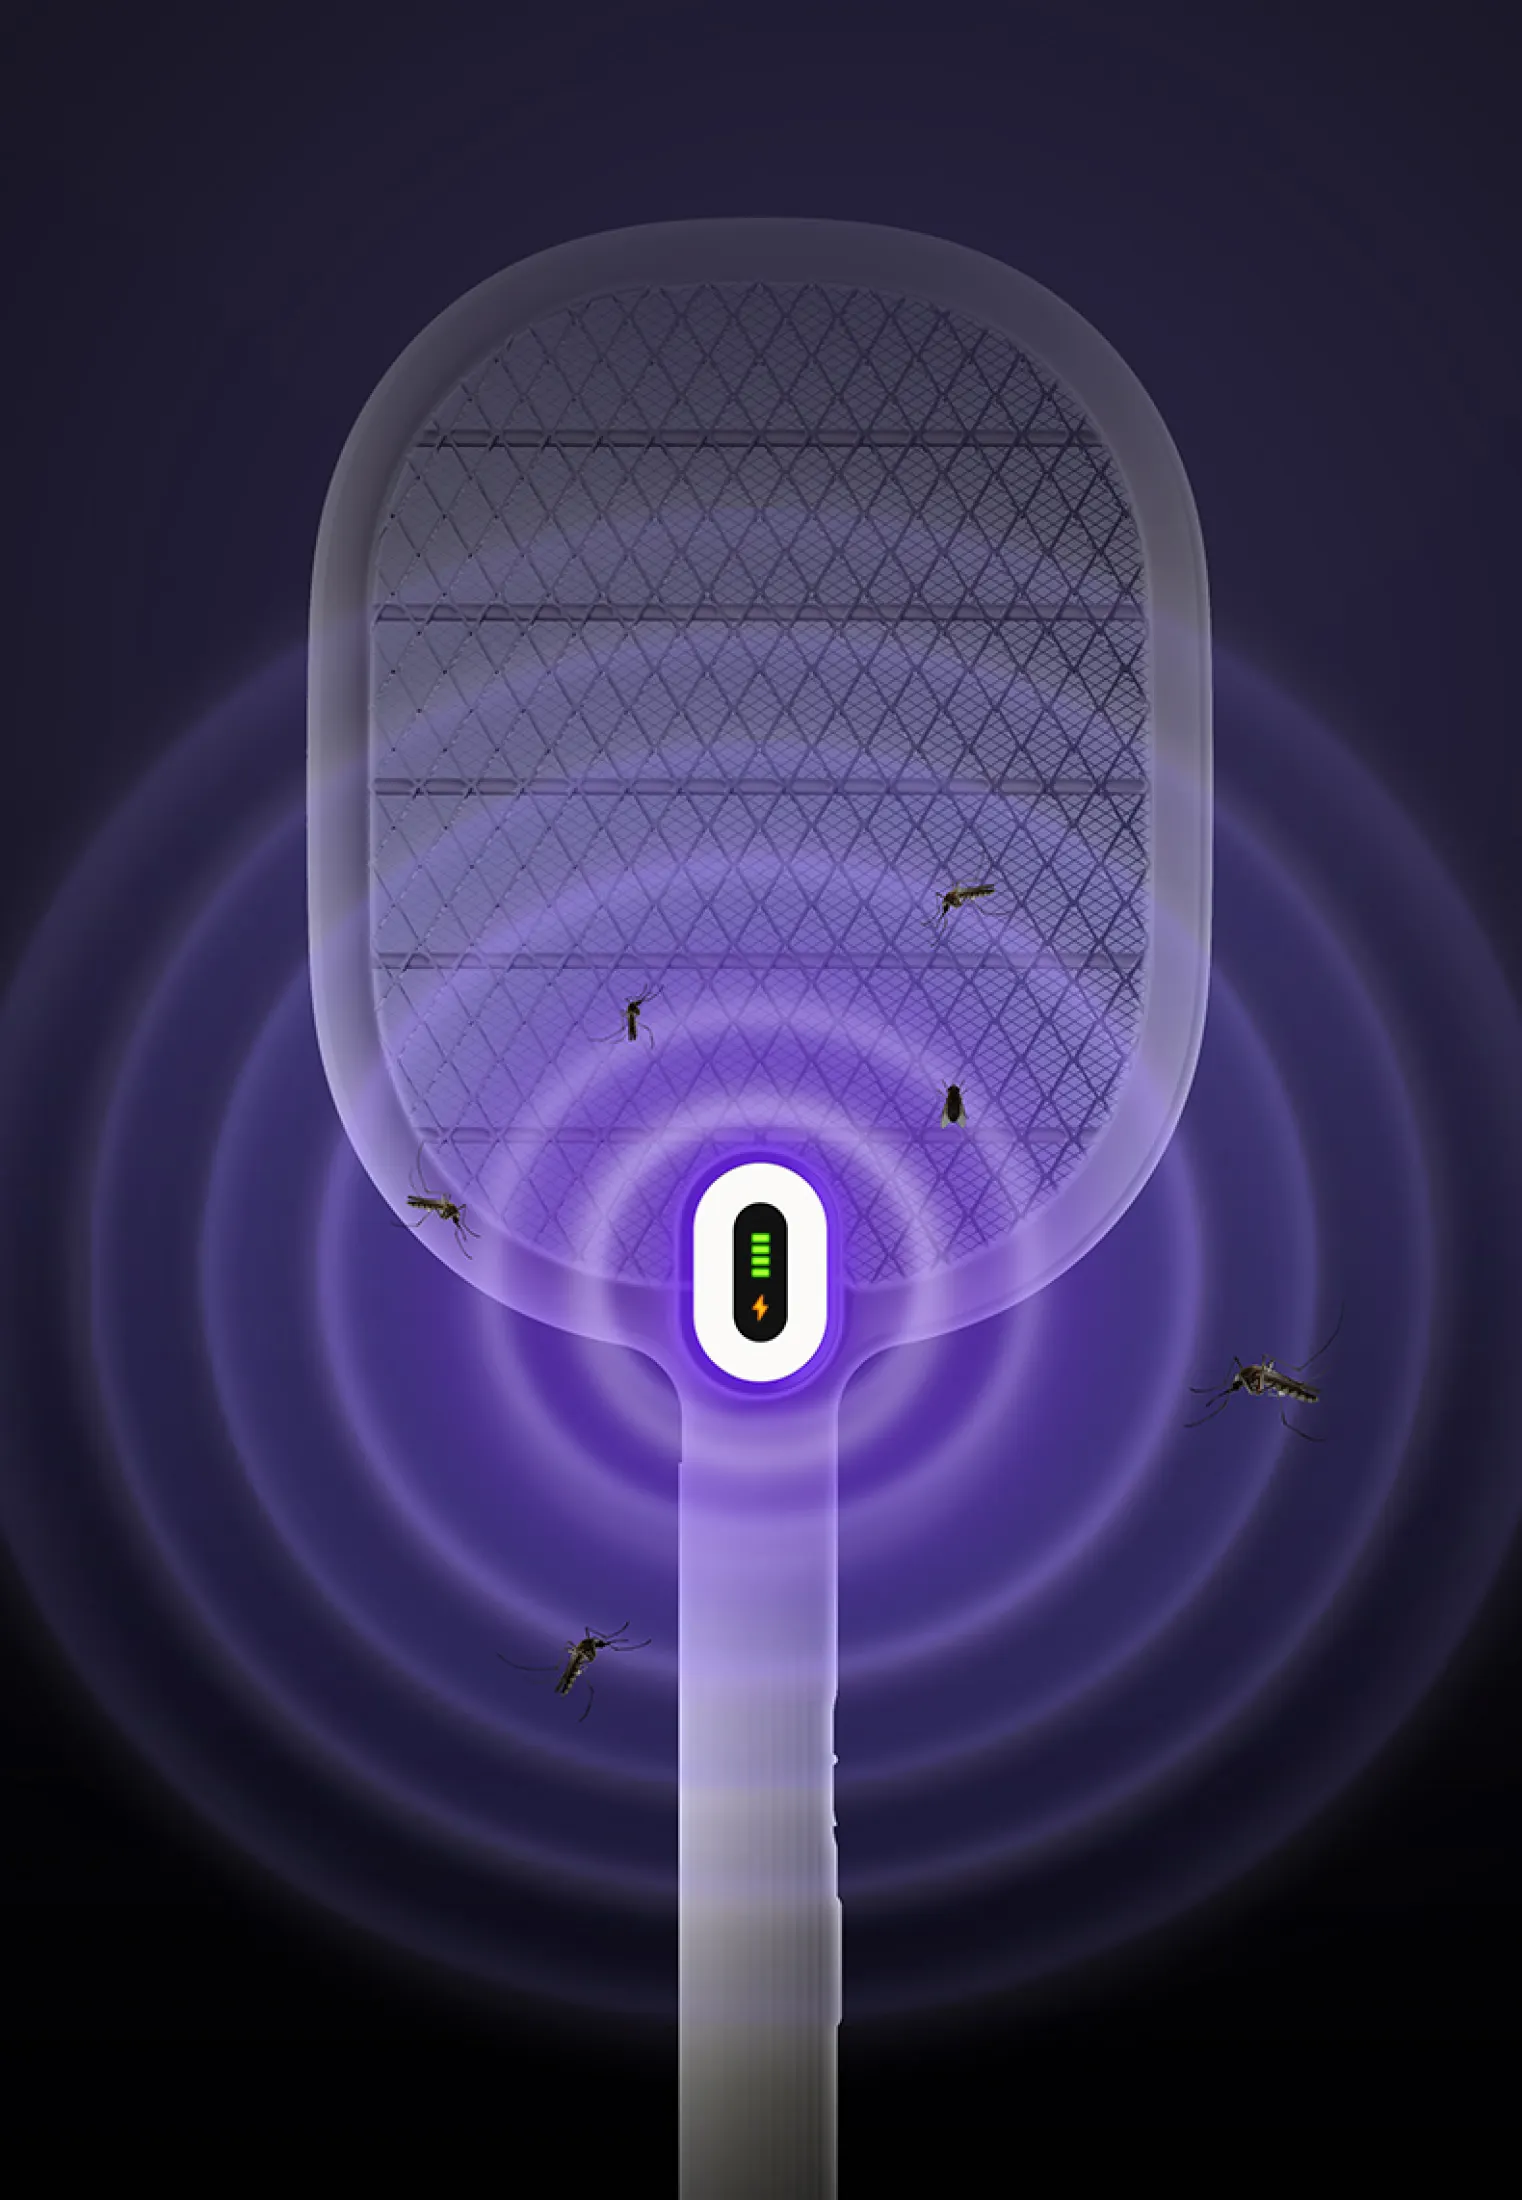 Vợt muỗi Uareliffe 3 có đèn LED 3 lớp lưới diệt muỗi bọ hiệu quả thiết kế đẹp gọn có thể sạc nhiều lần - Giới hạn 1 sản phẩm/khách hàng